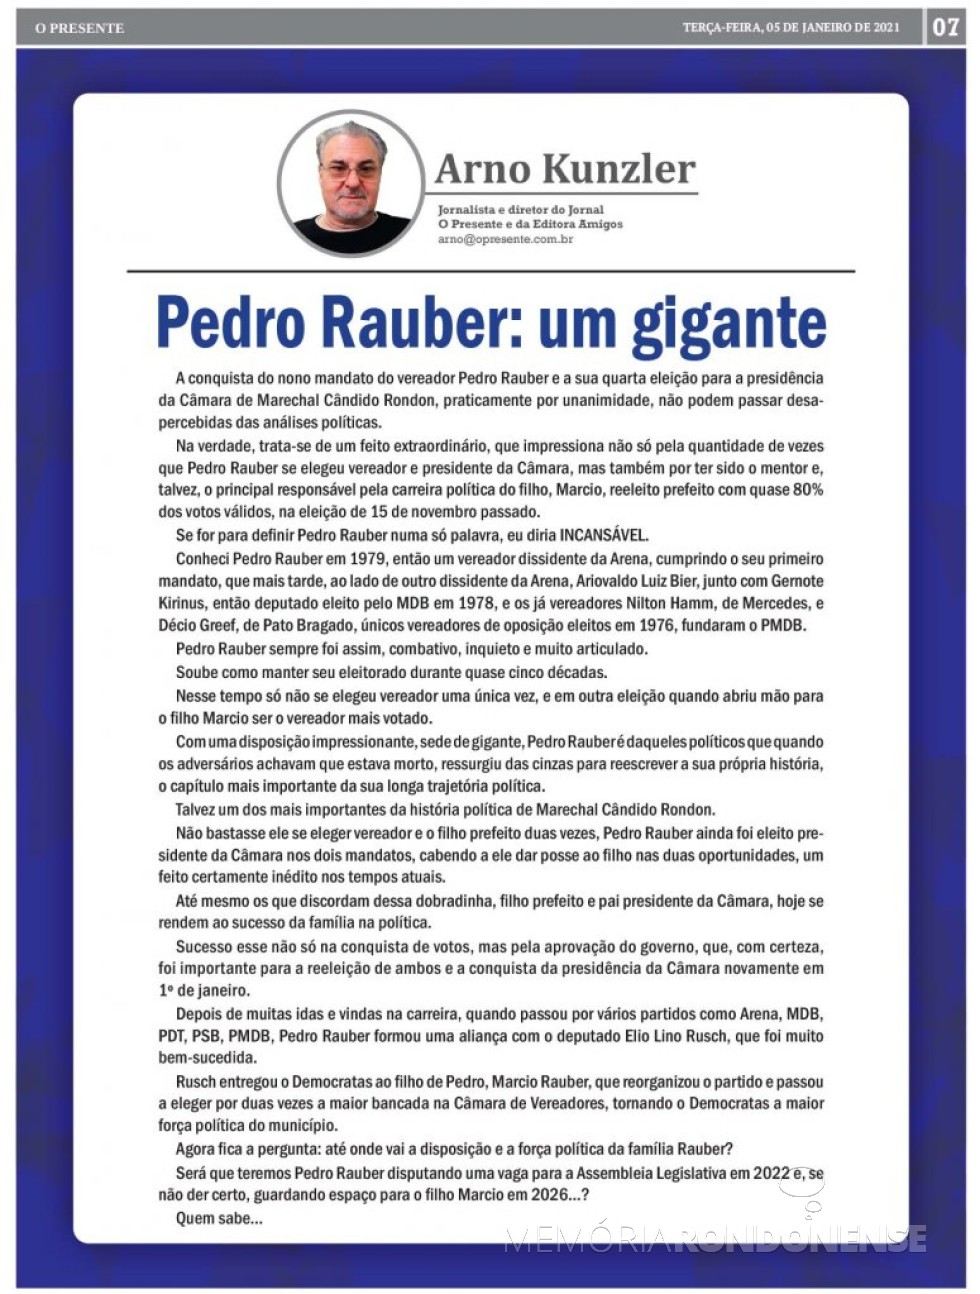 Comentário do jornalista Arno Kunzler sobrea trajetória política de Pedro Rauber.
Imagem: Acervo O Presente - FOTO 58 -